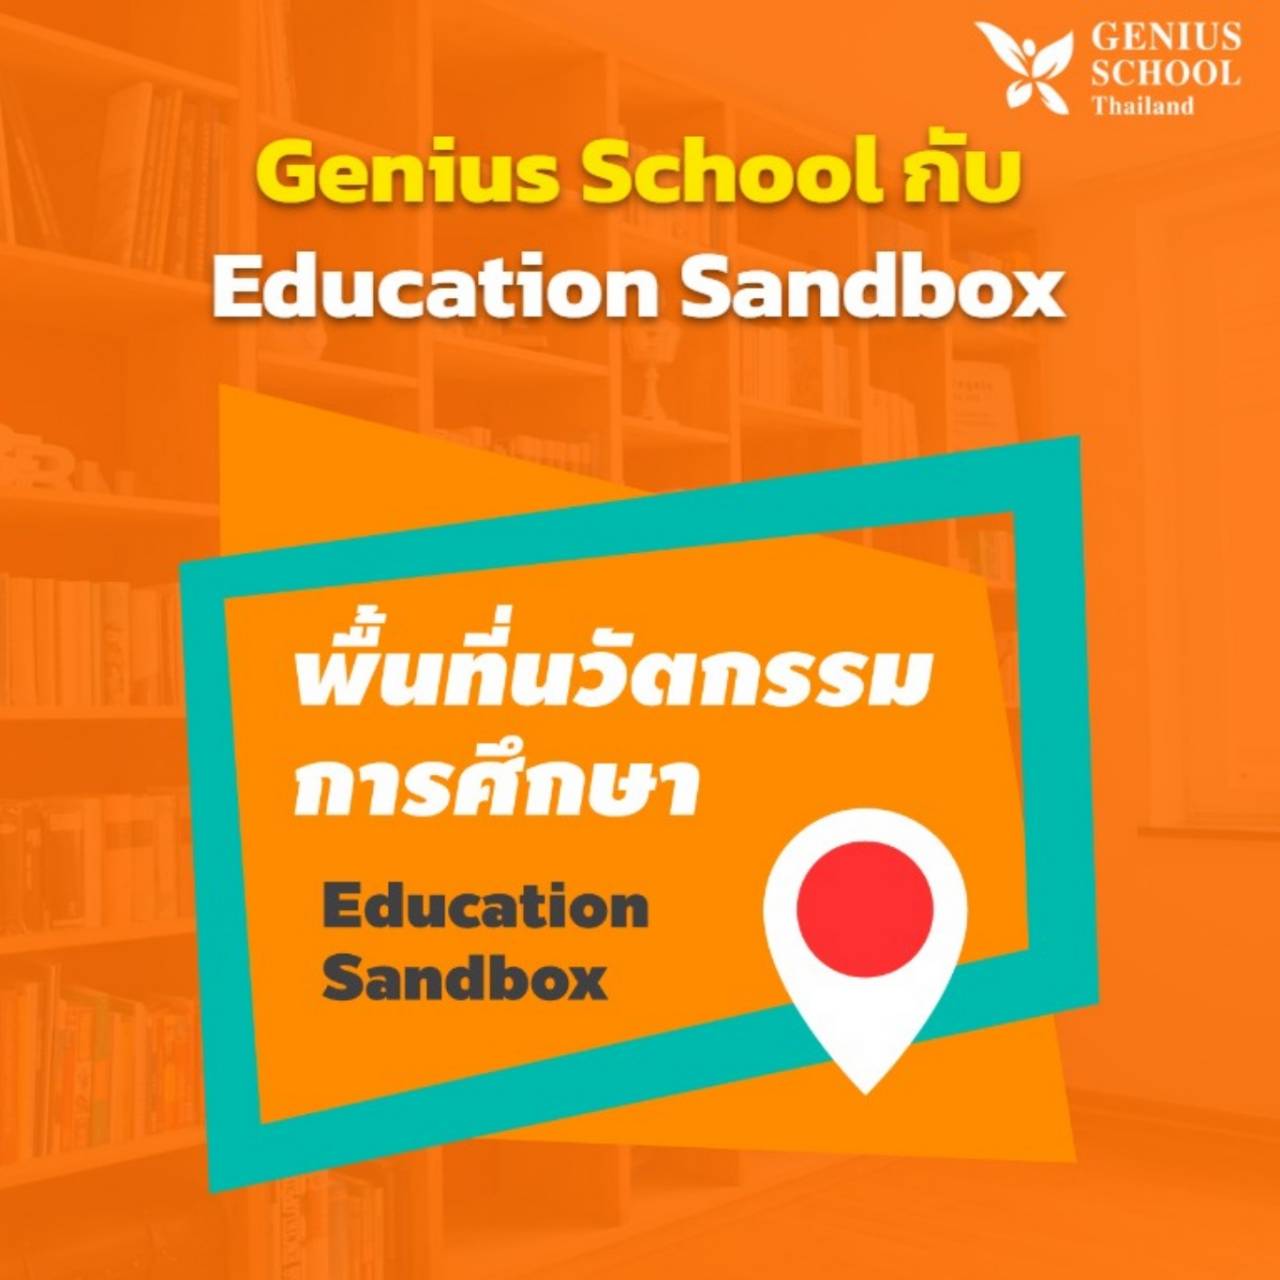 <h1>Genius School และการ “พัฒนาโรงเรียน” กับ Education Sandbox</h1>